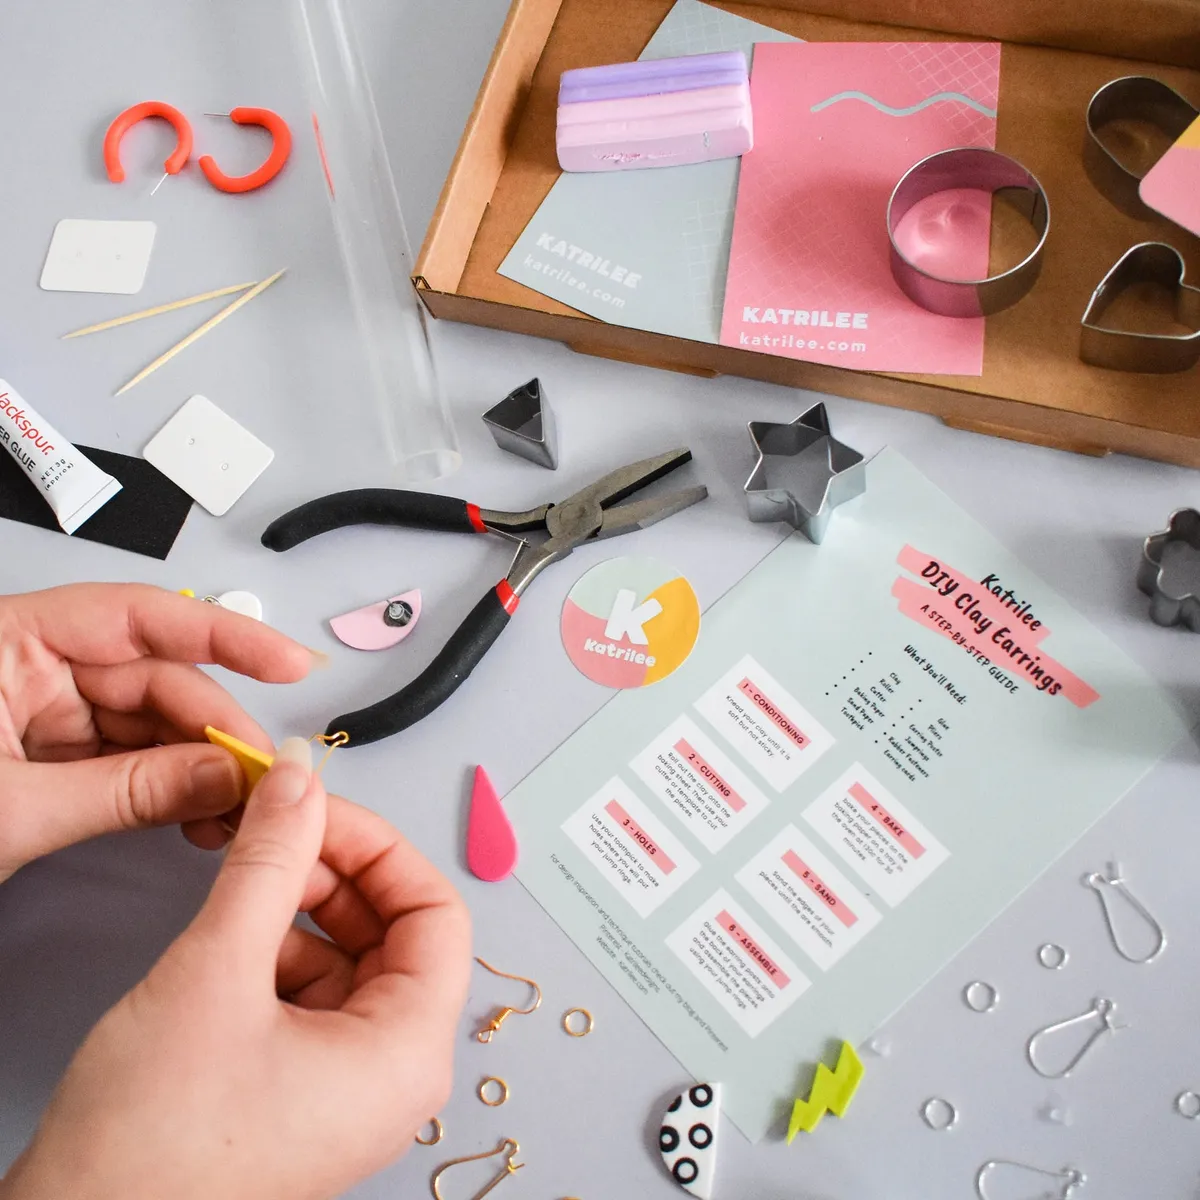 Beginners DIY Clay Earrings Kit/ Sun Sprinkles COLORFUL Version